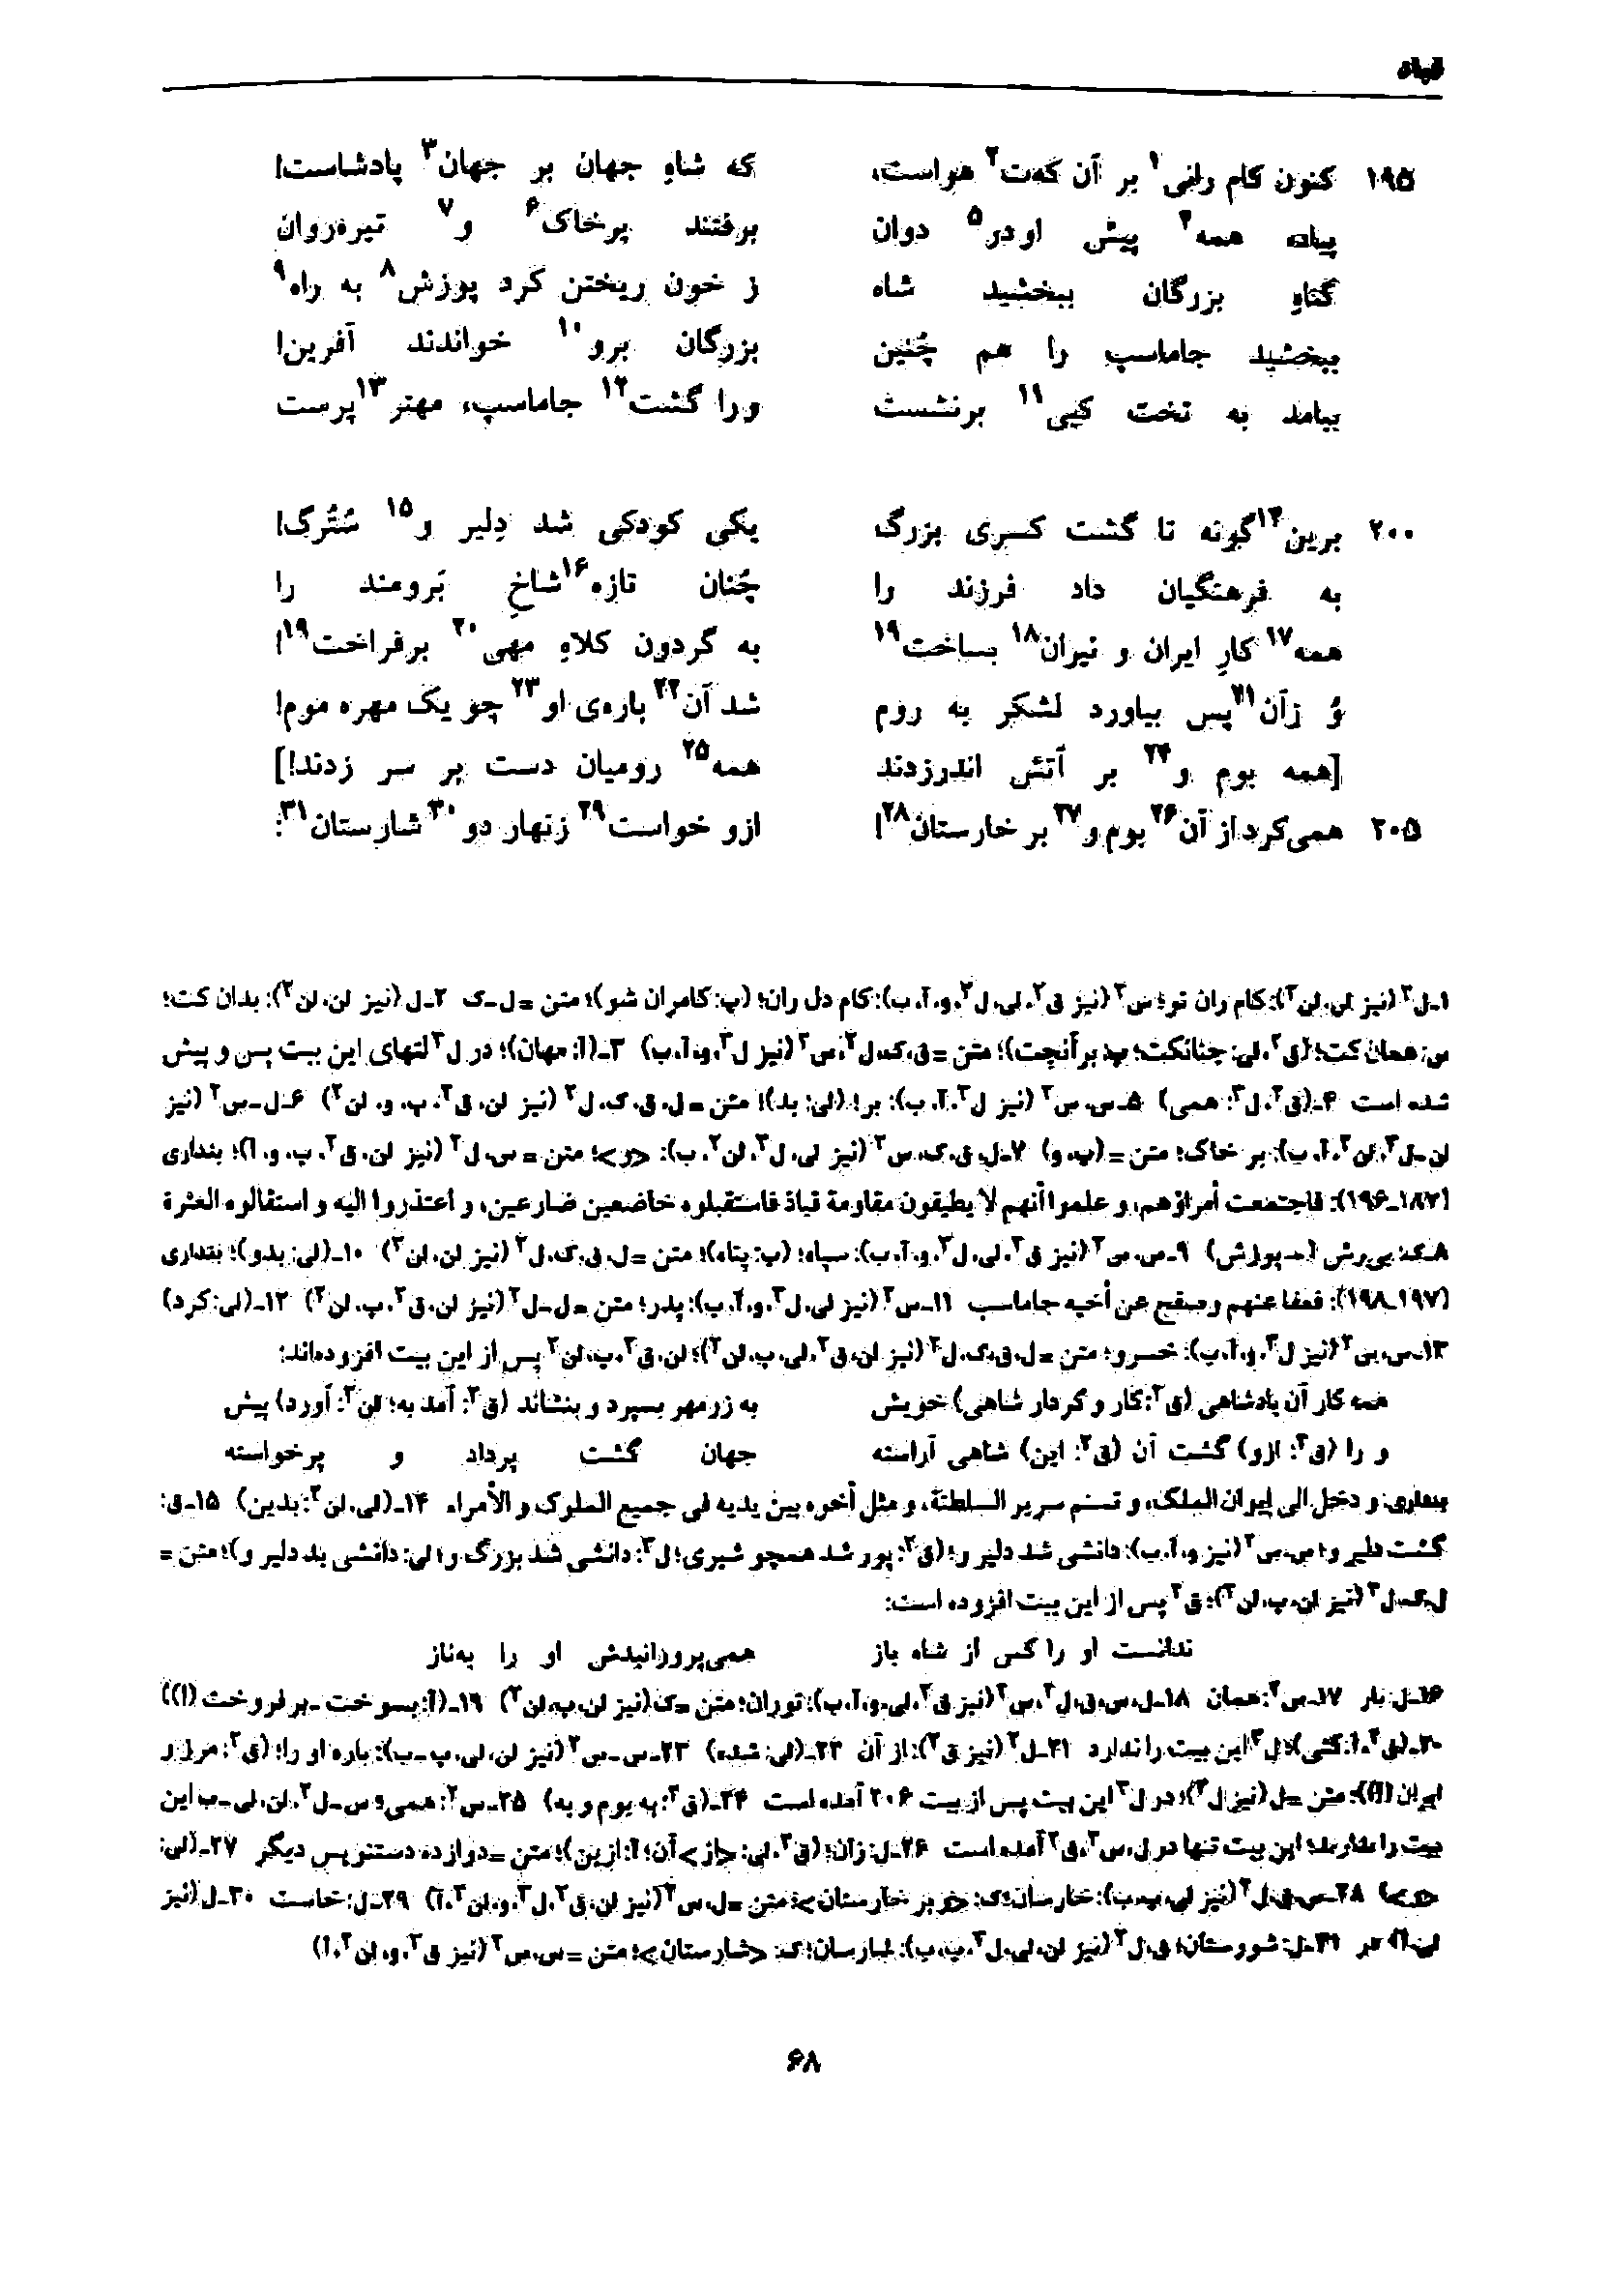 vol. 7, p. 68